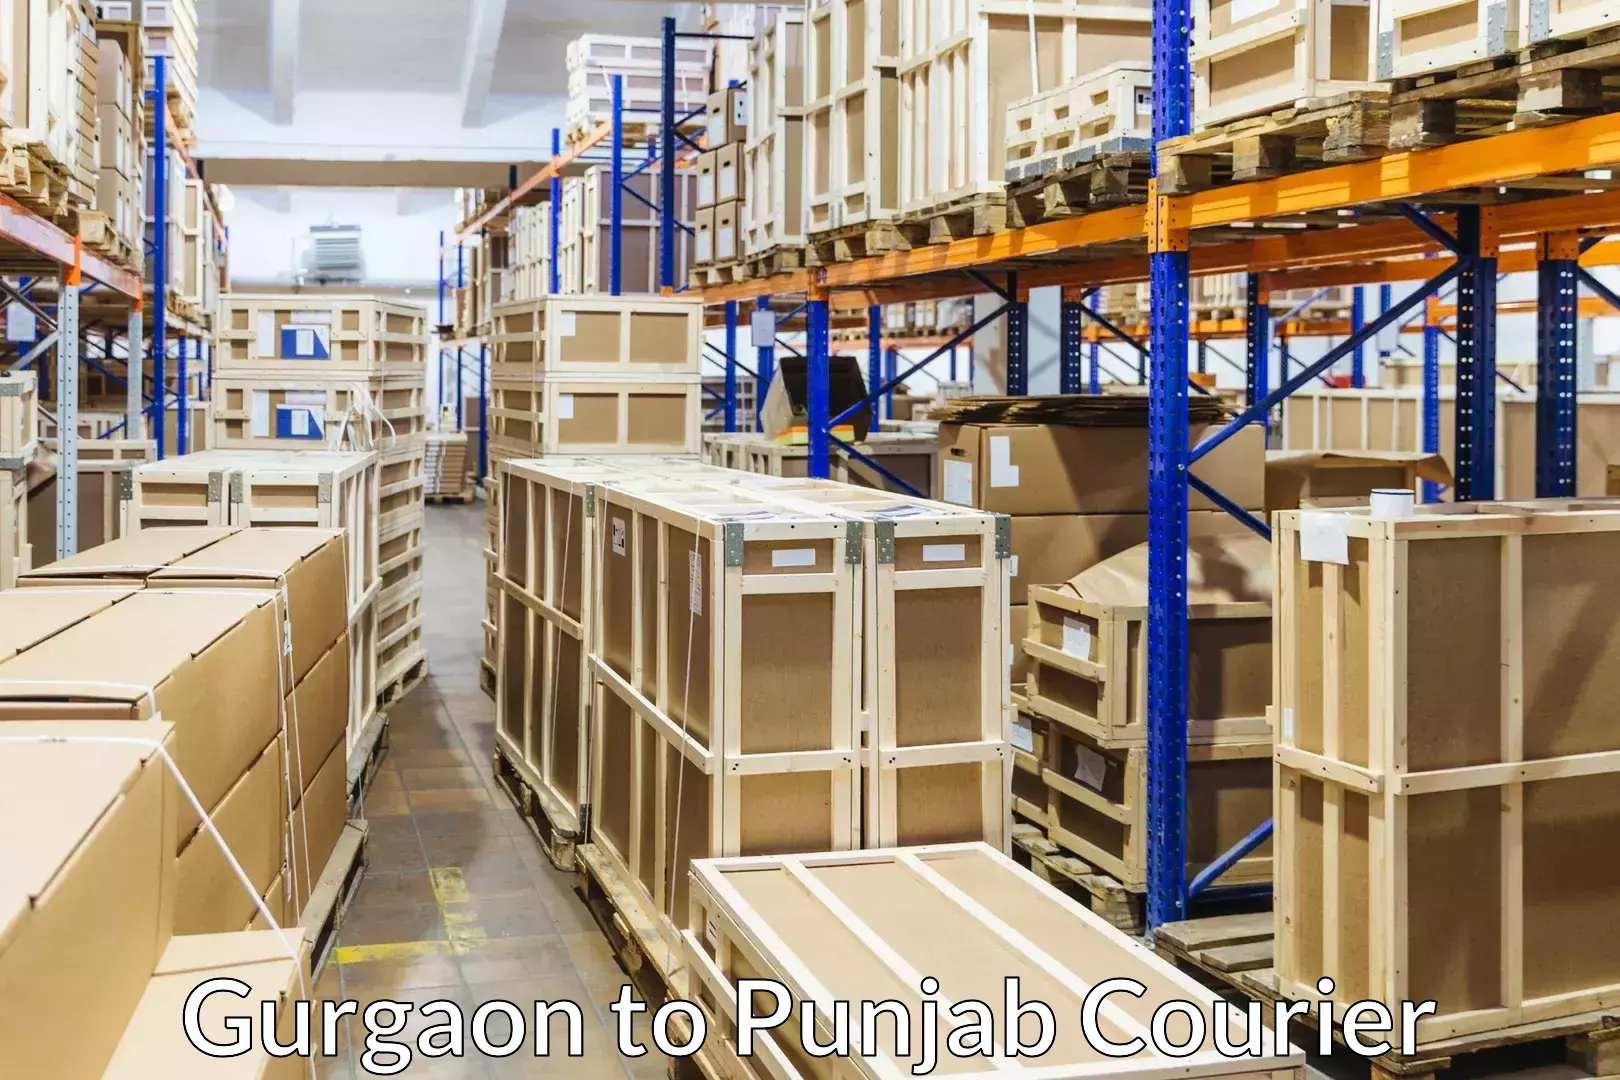 Customized furniture moving Gurgaon to Punjab